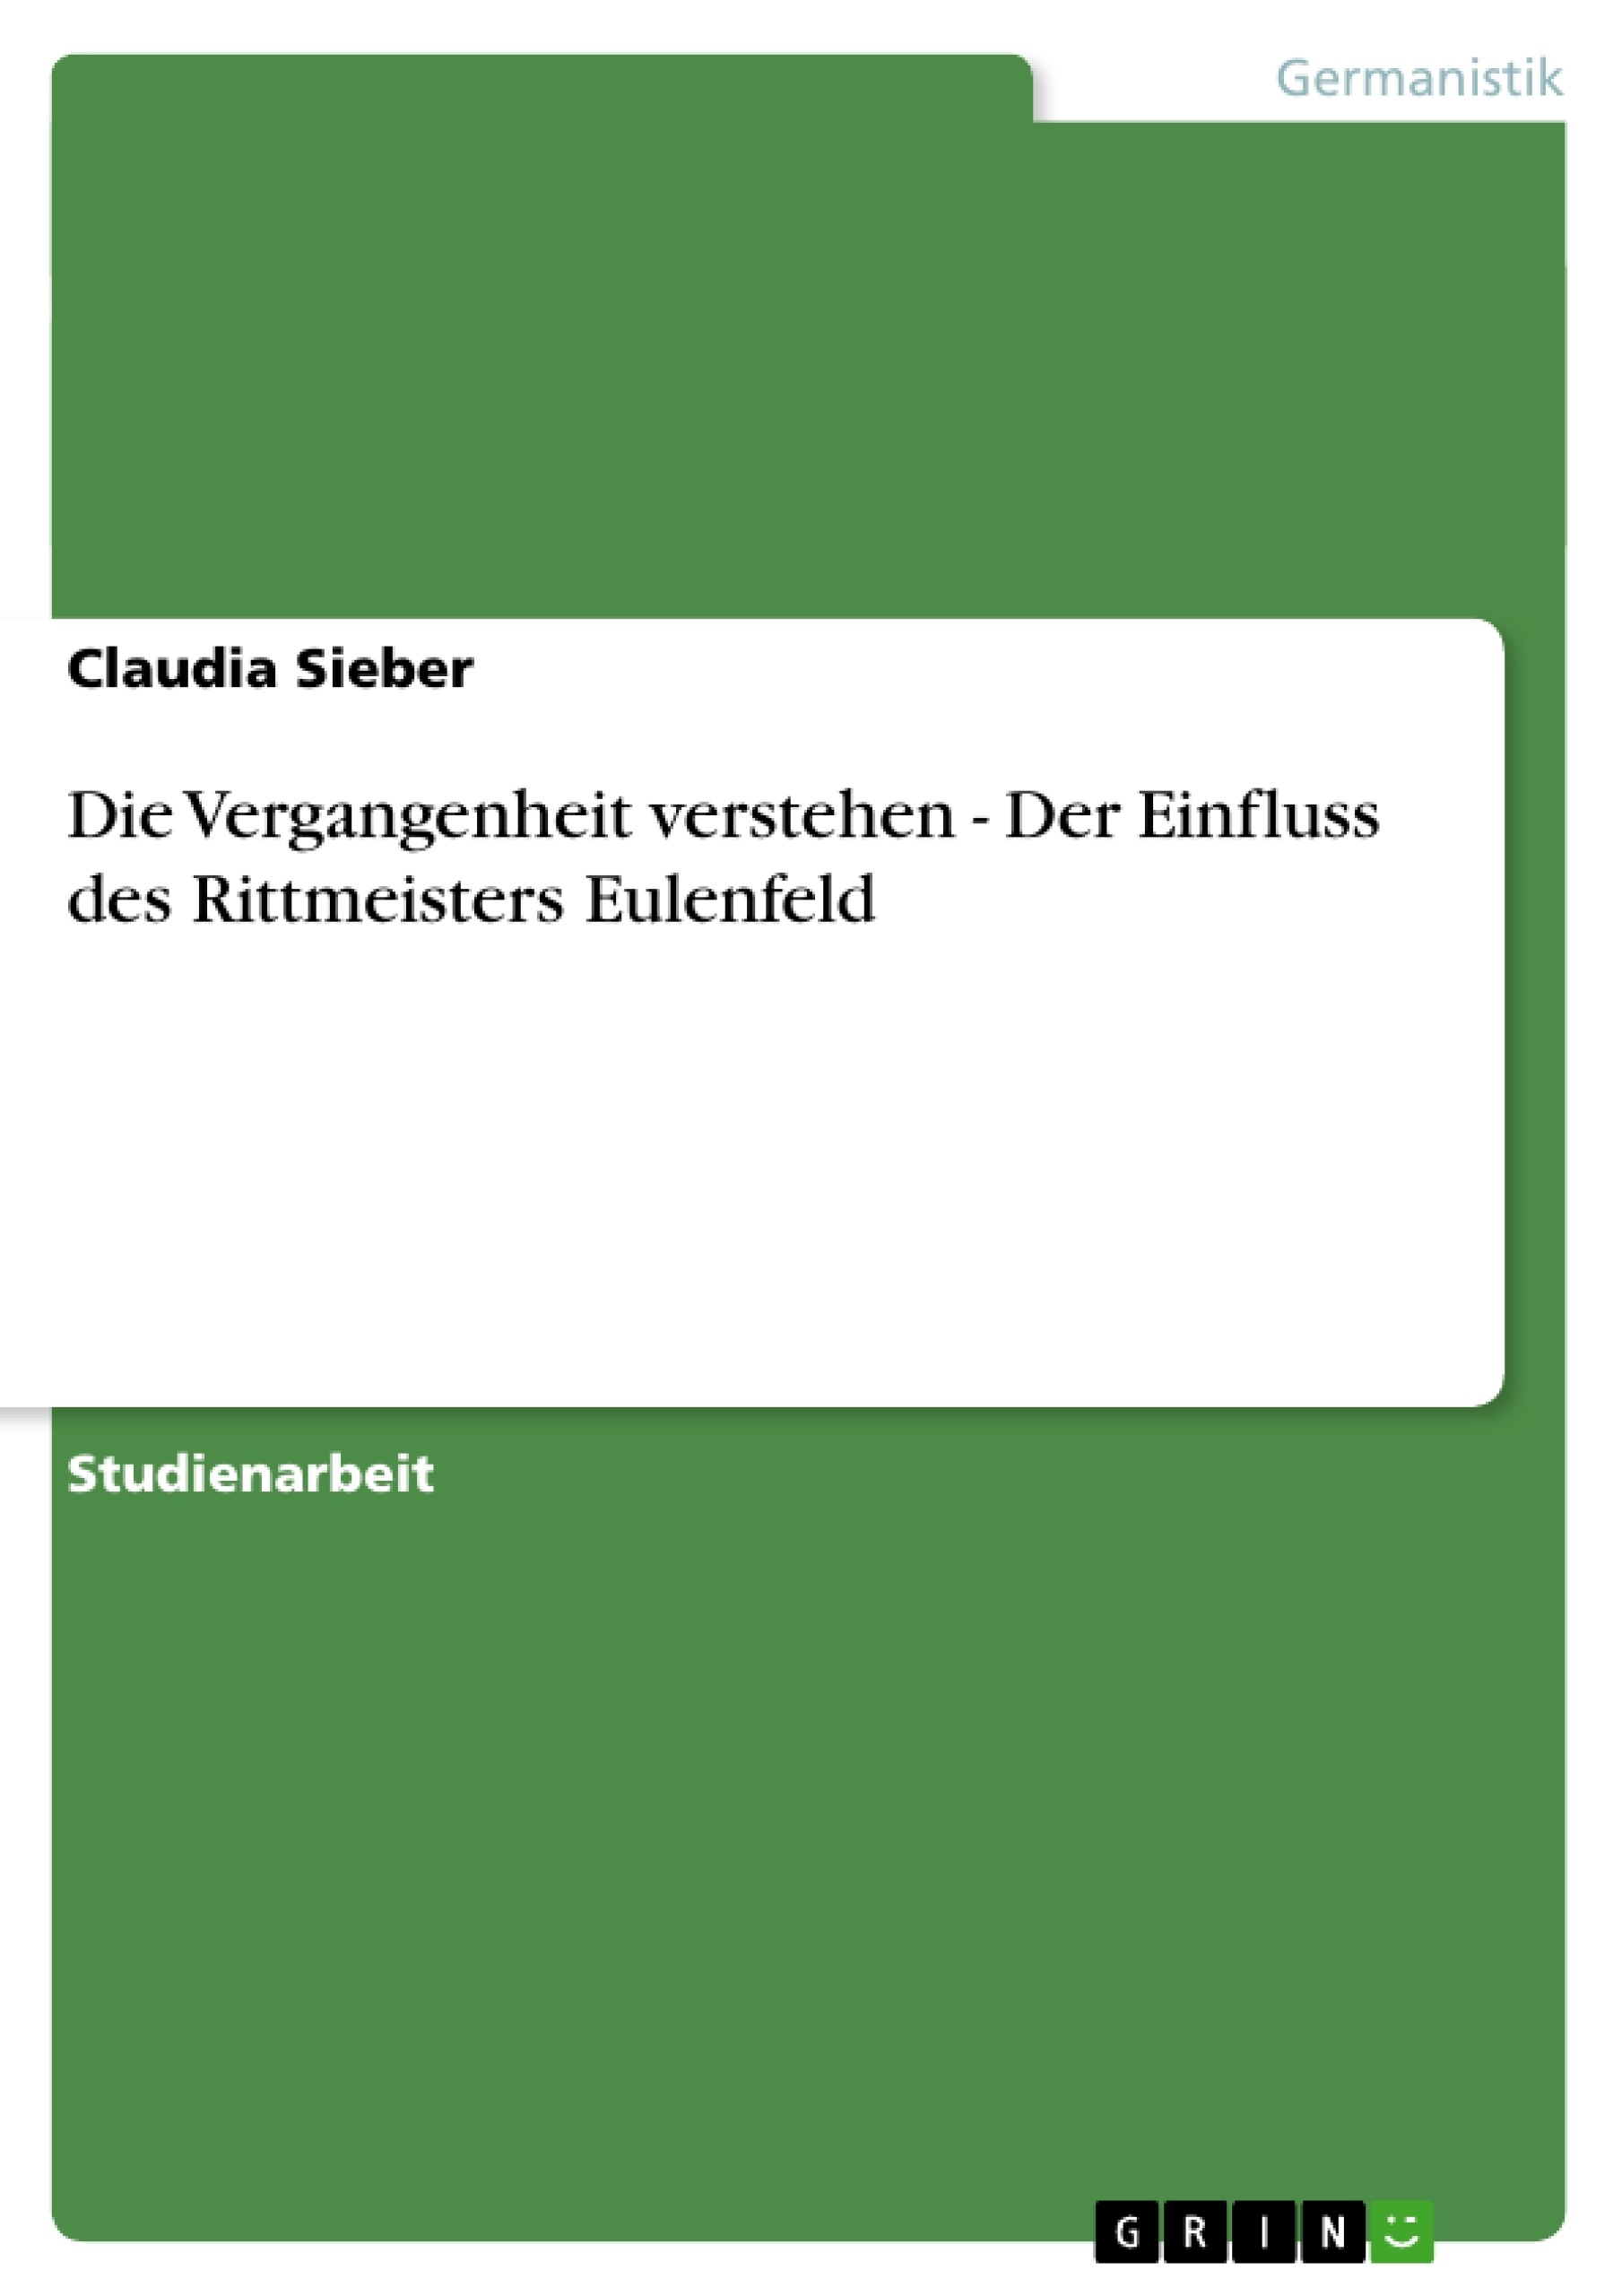 Title: Die Vergangenheit verstehen - Der Einfluss des Rittmeisters Eulenfeld